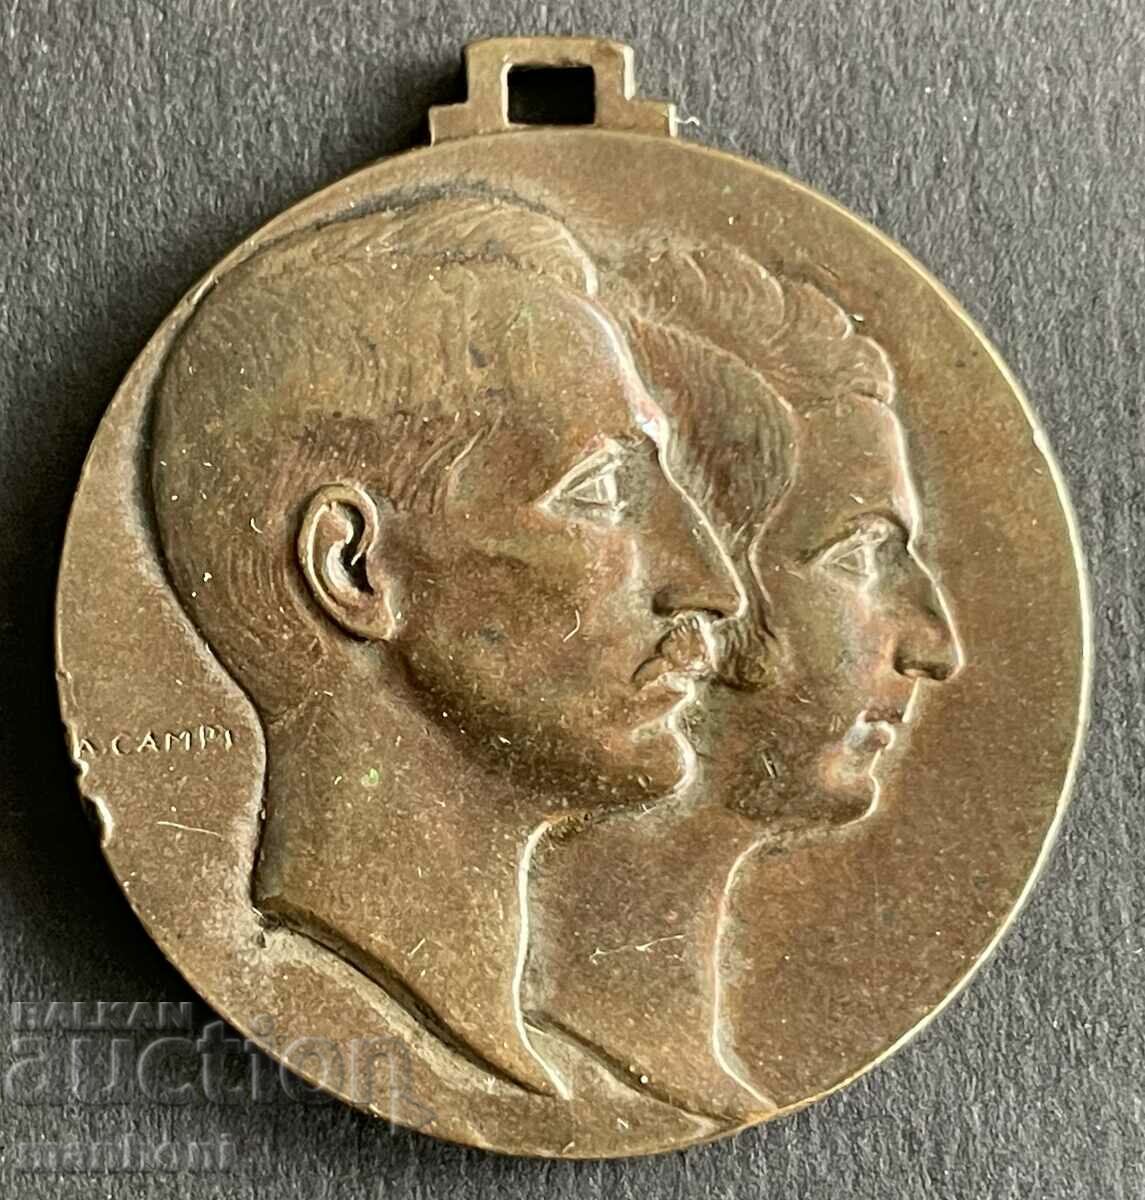 5446 Μετάλλιο του Βασιλείου της Βουλγαρίας Γάμος του Τσάρου Μπόρις και της Ιωάννας 1930.